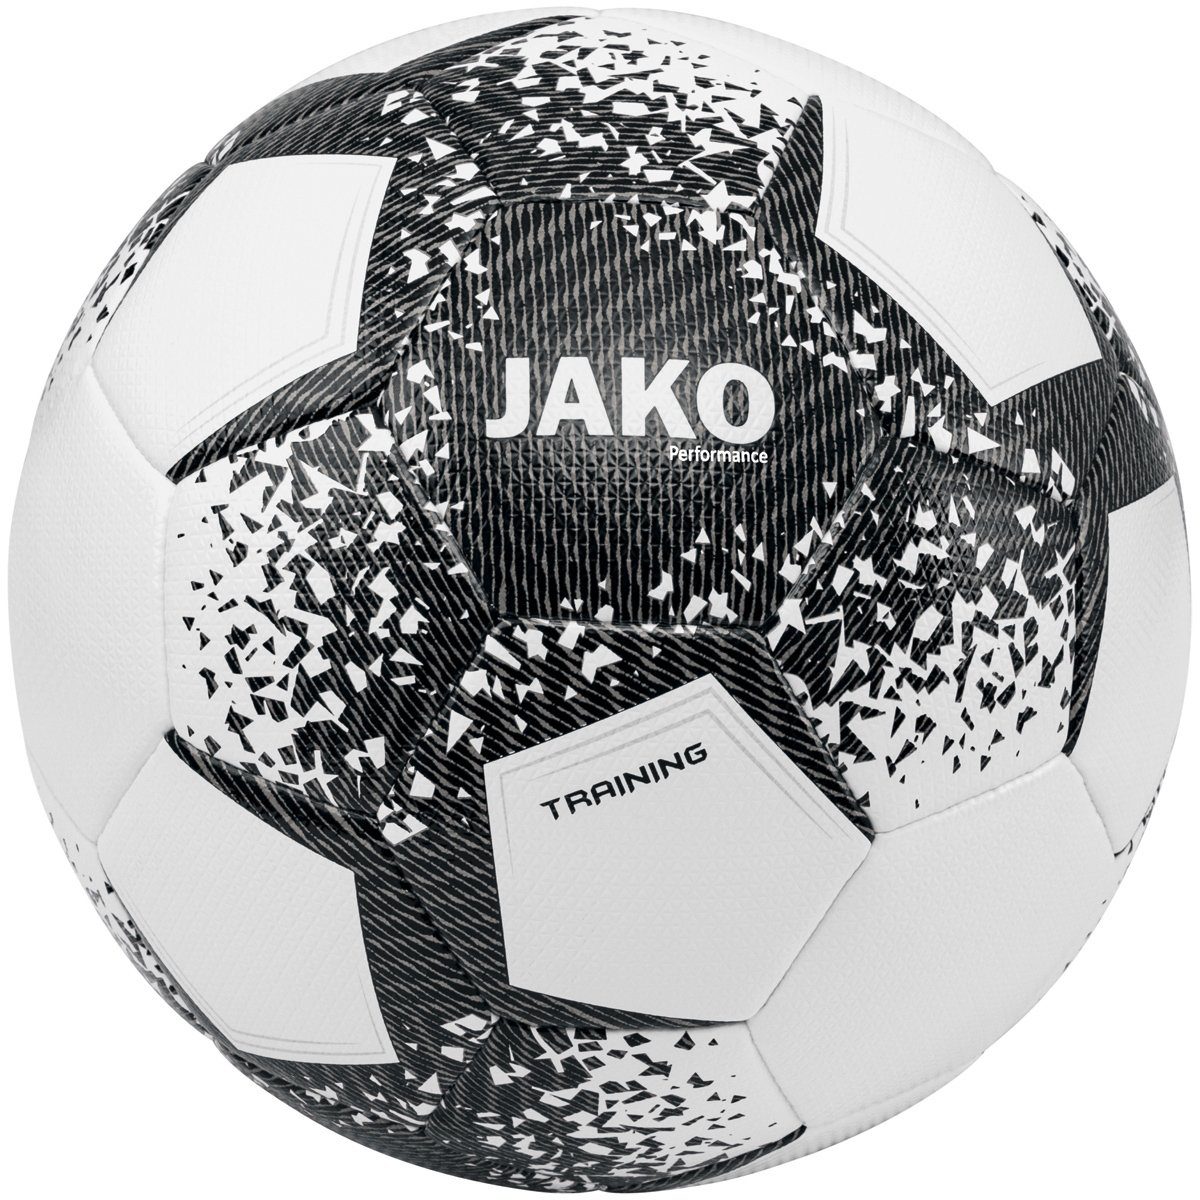 Jako - Trainingsball weiss/schwarz/steingrau Fußball Performance Ball 2301 (Ganzjahresartikel)